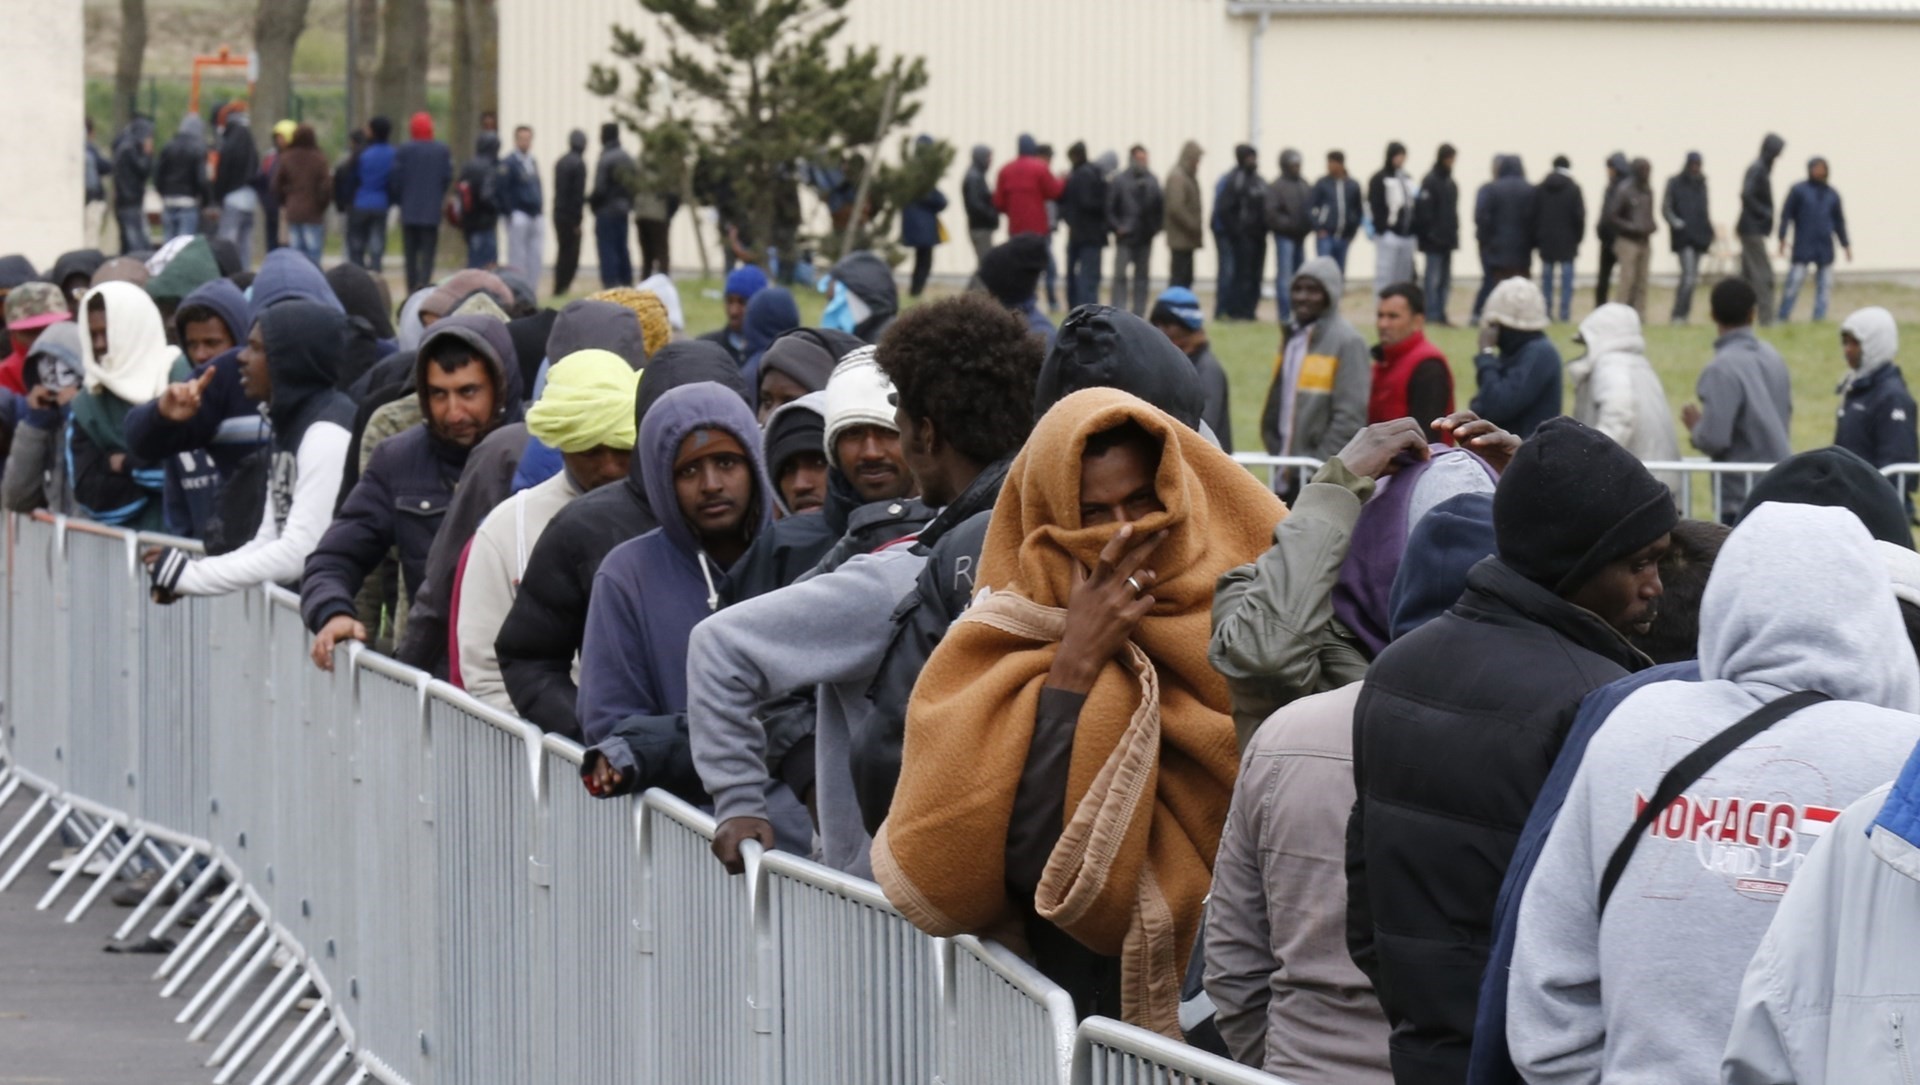 СМИ: власти Германии ежедневно высылают из страны сотни мигрантов